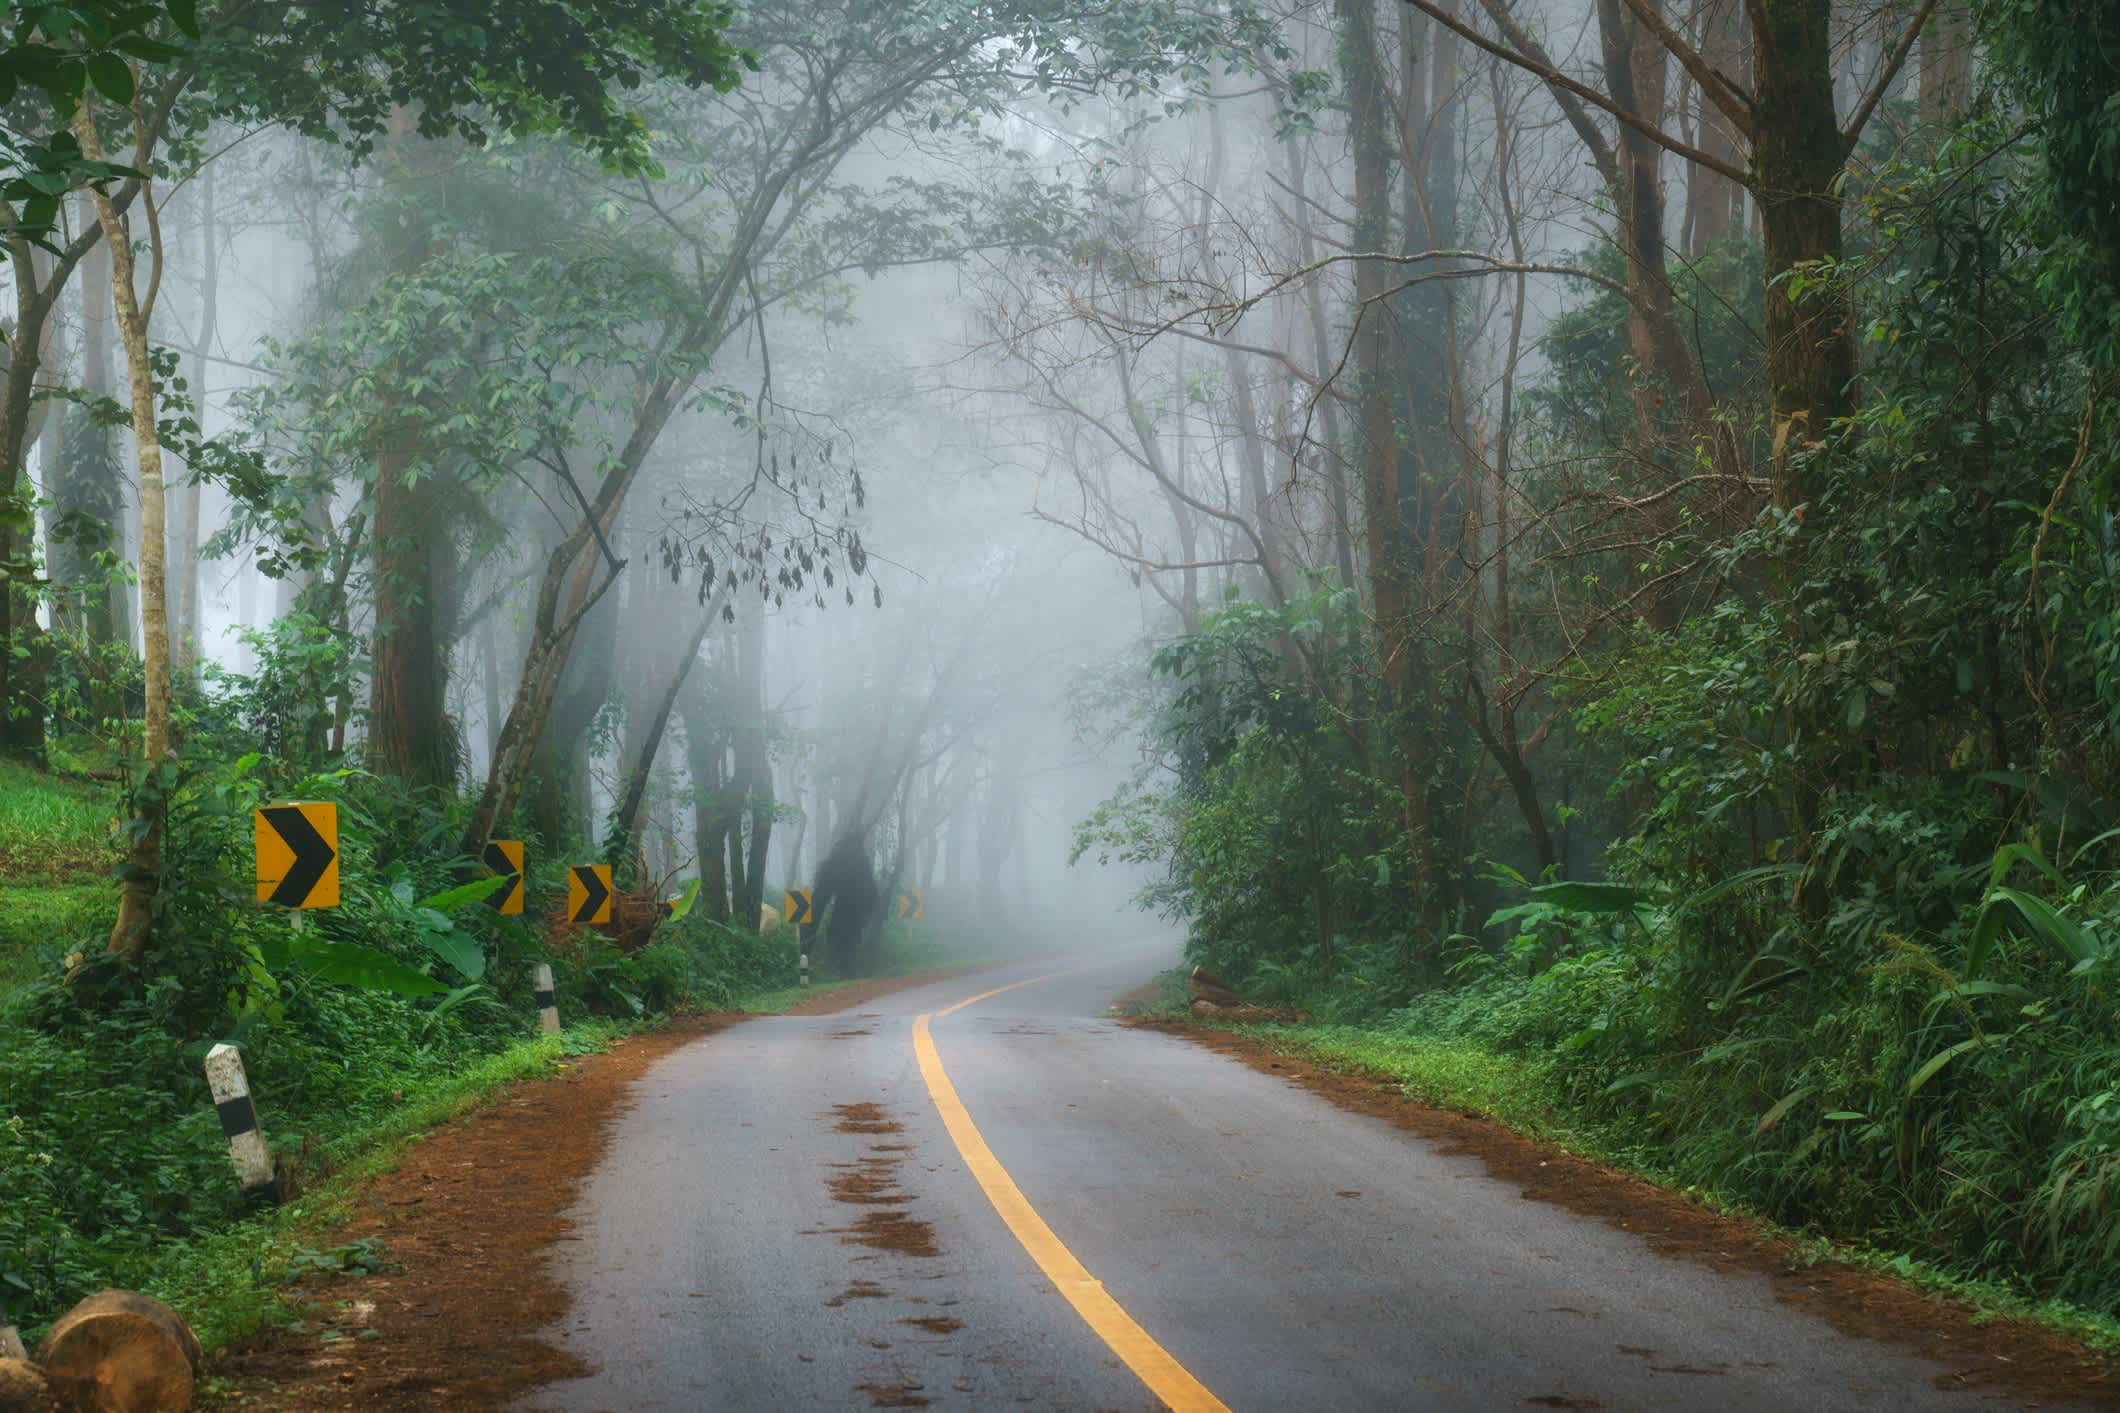 Belle route matinale dans le brouillard près de Doi Pha Hee, Chiang Rai, Thaïlande.